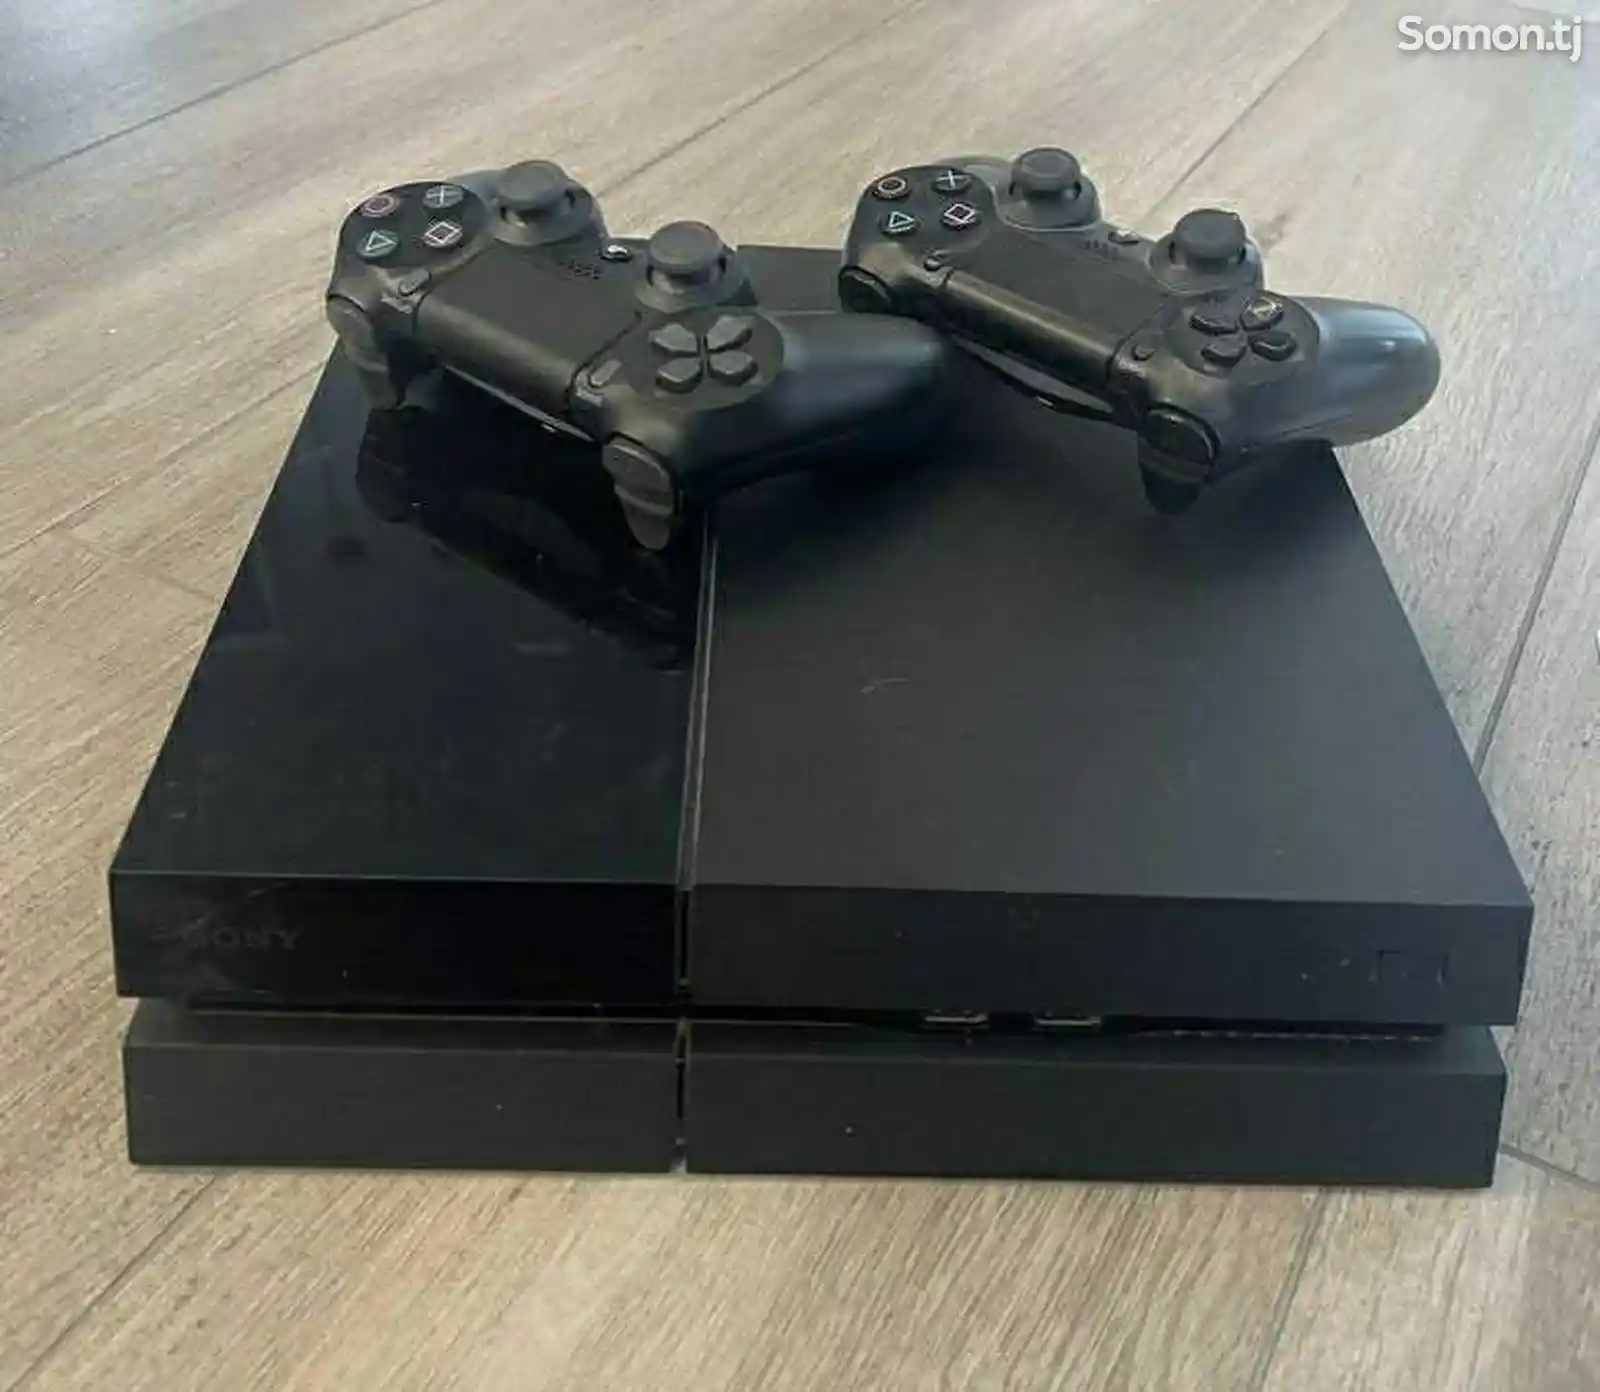 Игровая приставка Sony Playstation 4